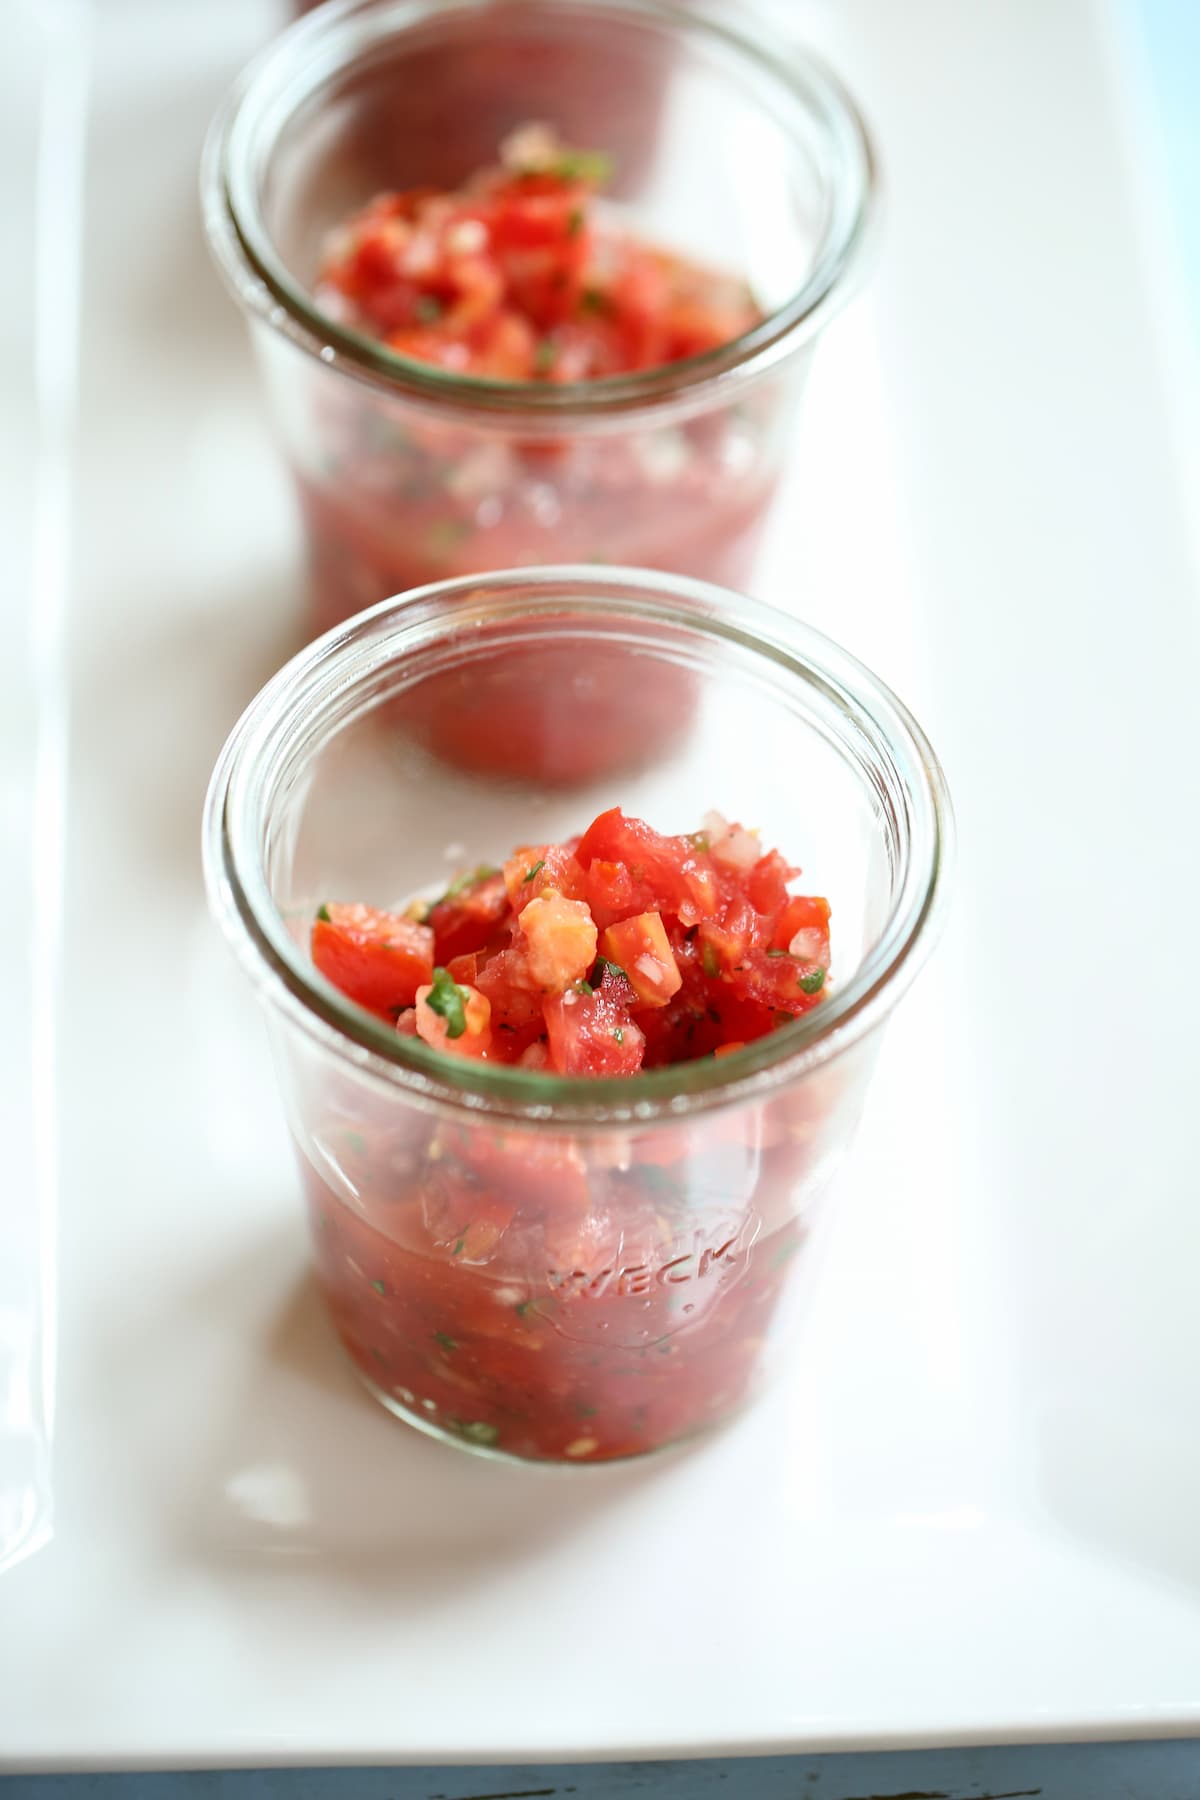 a small glass jar of salsa.